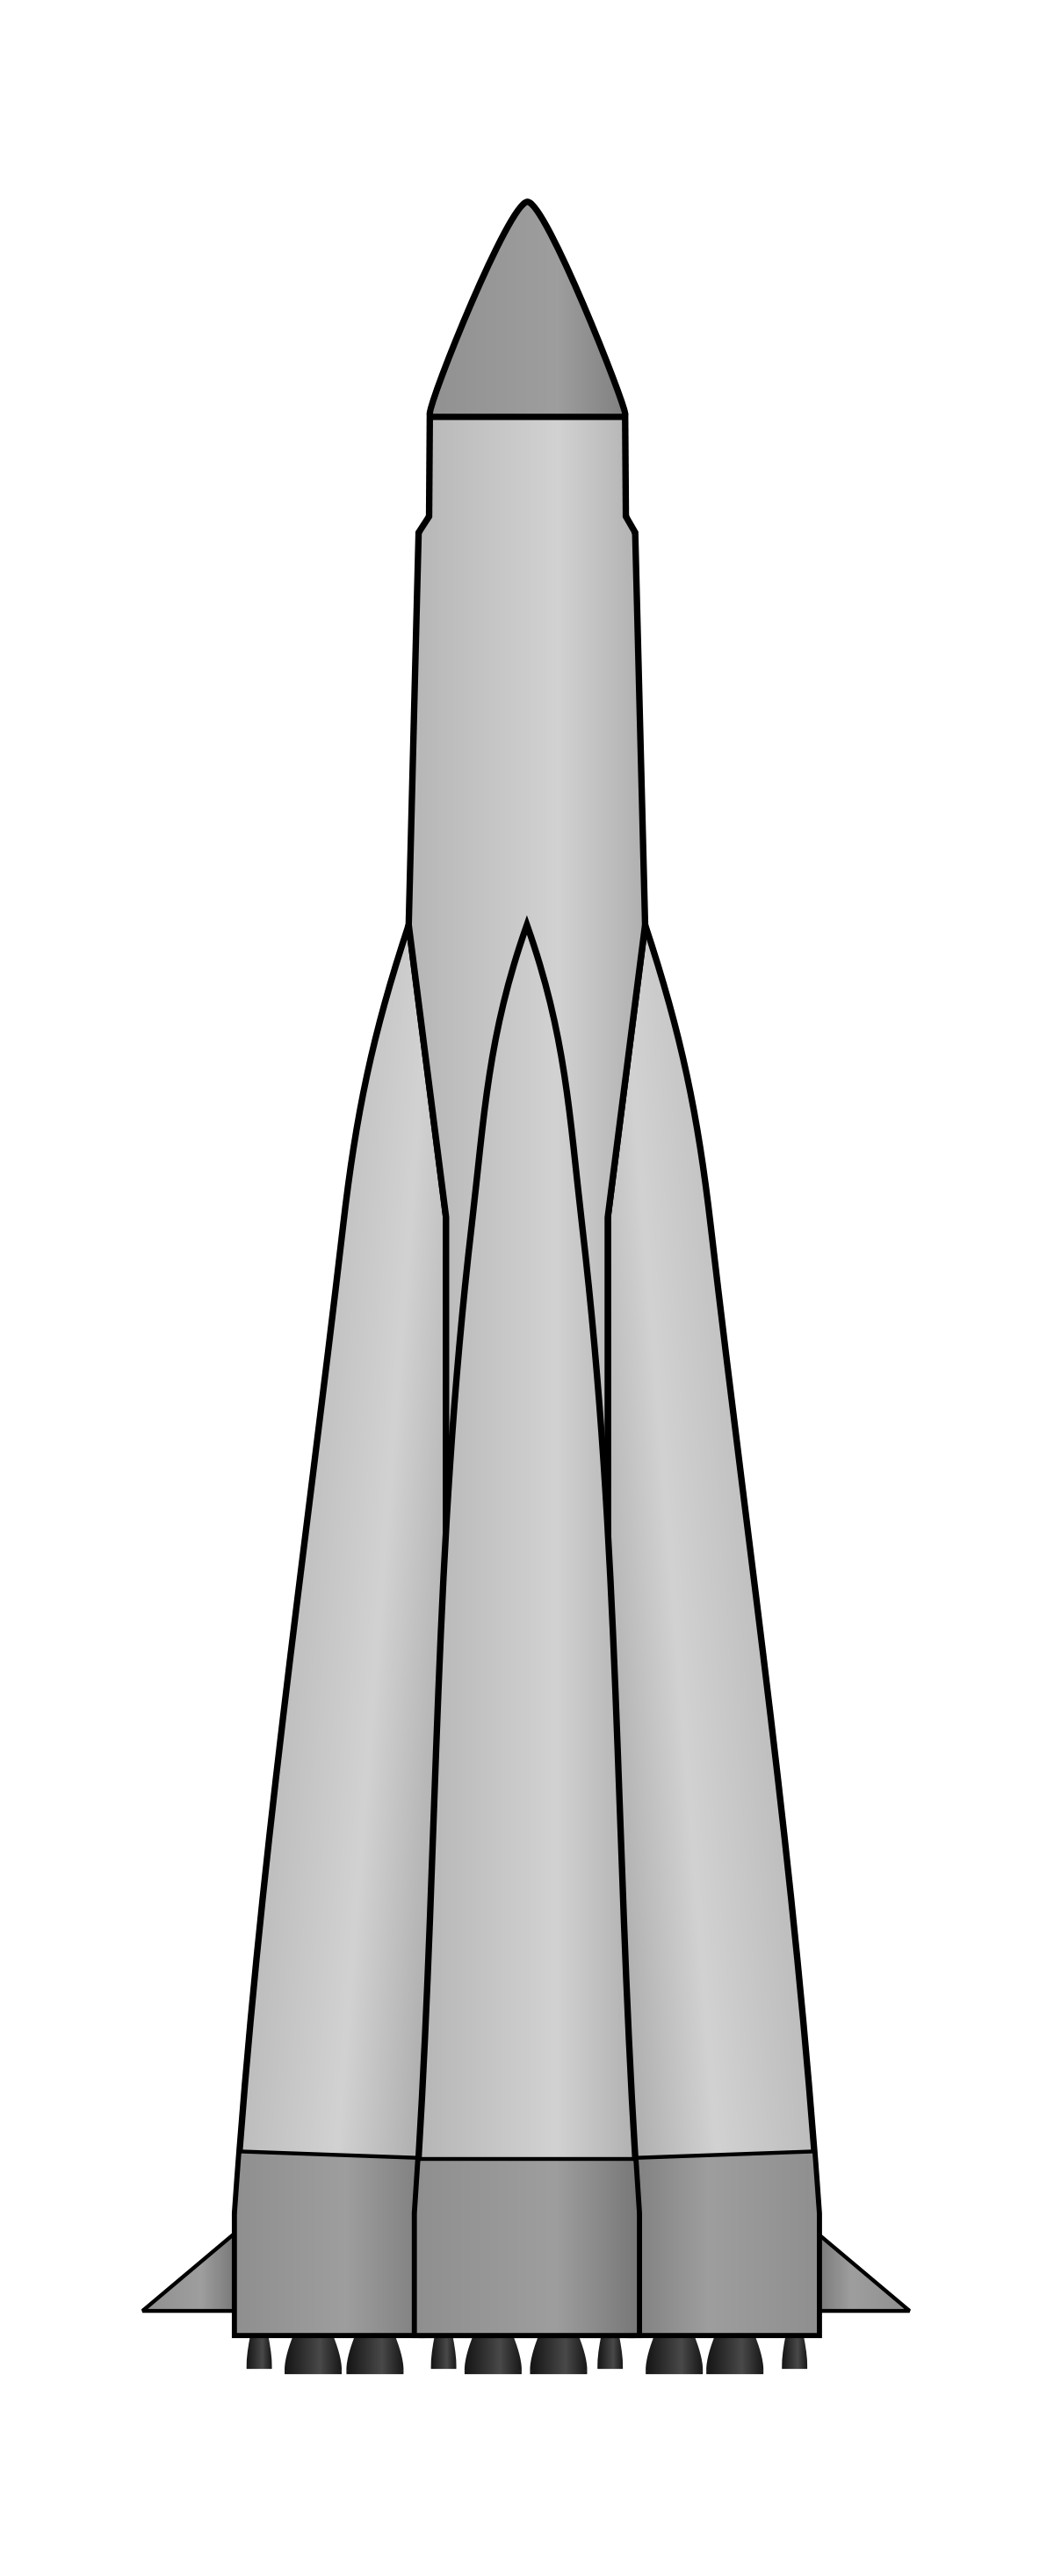 Ракета восток рисунок. Ракета-носитель 11а59 "полет". Спутник 8к71пс. Ракетоноситель Восток 2. Восход 2 ракета-носитель.